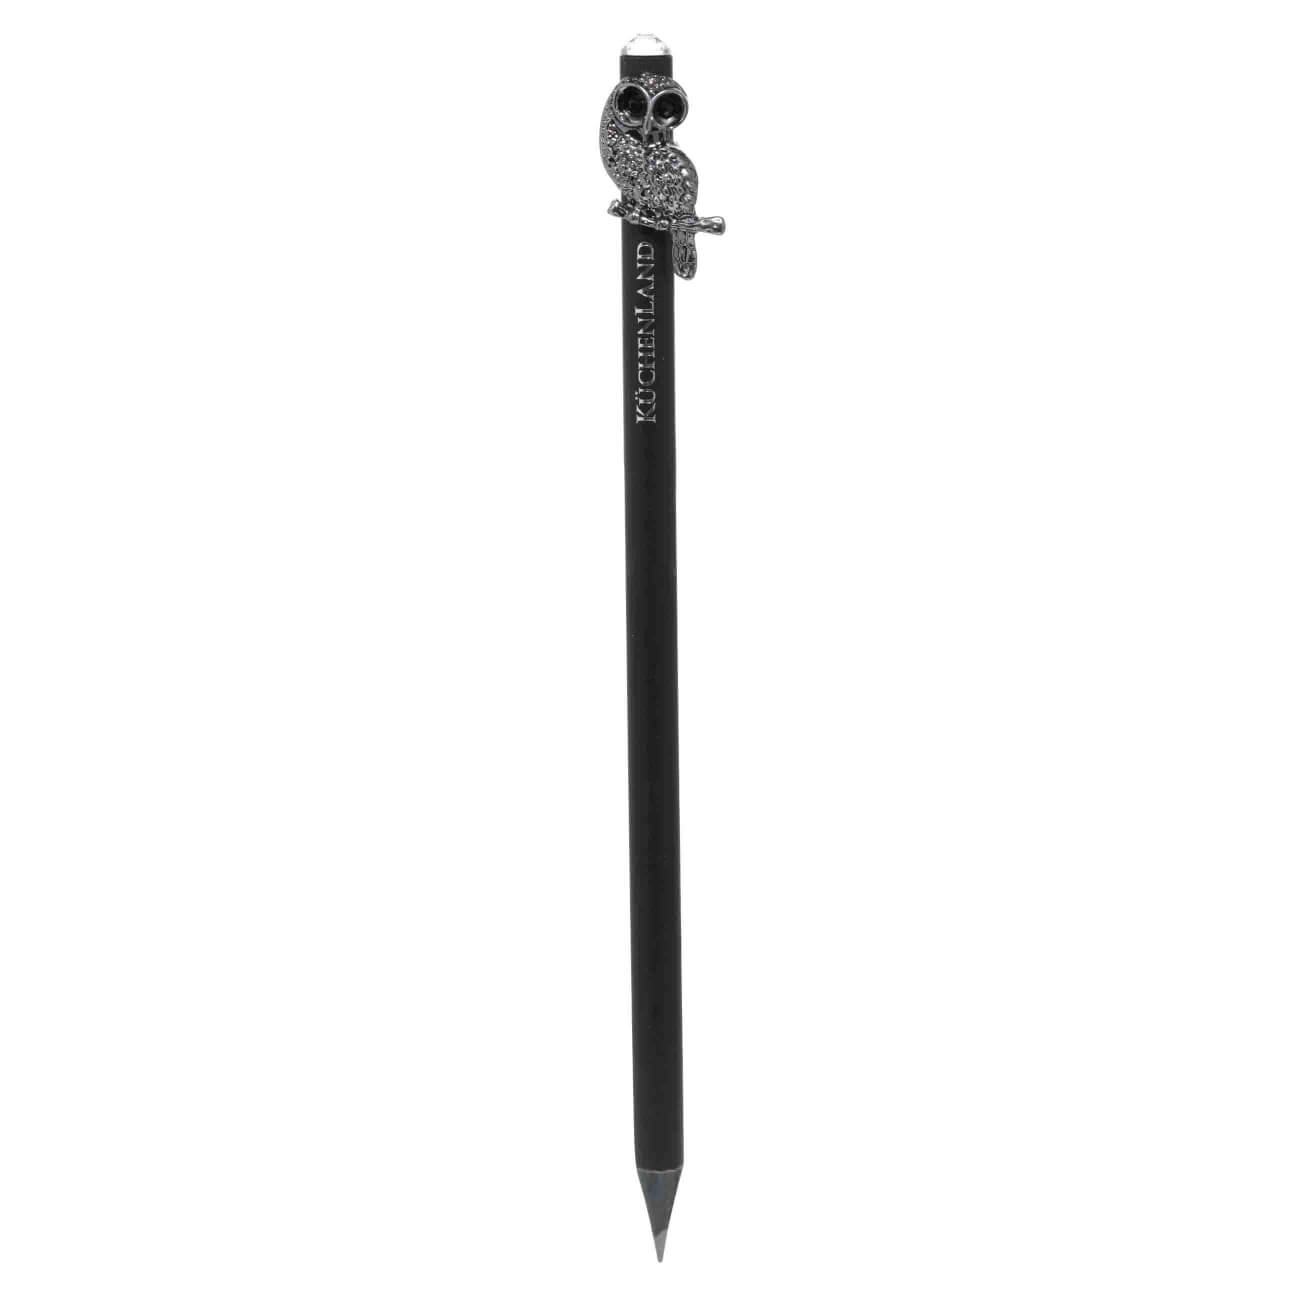 Карандаш, 18 см, чернографитный, с фигуркой, черный, Сова, Draw figure карандаш чернографитный cretacolor fine art 6в